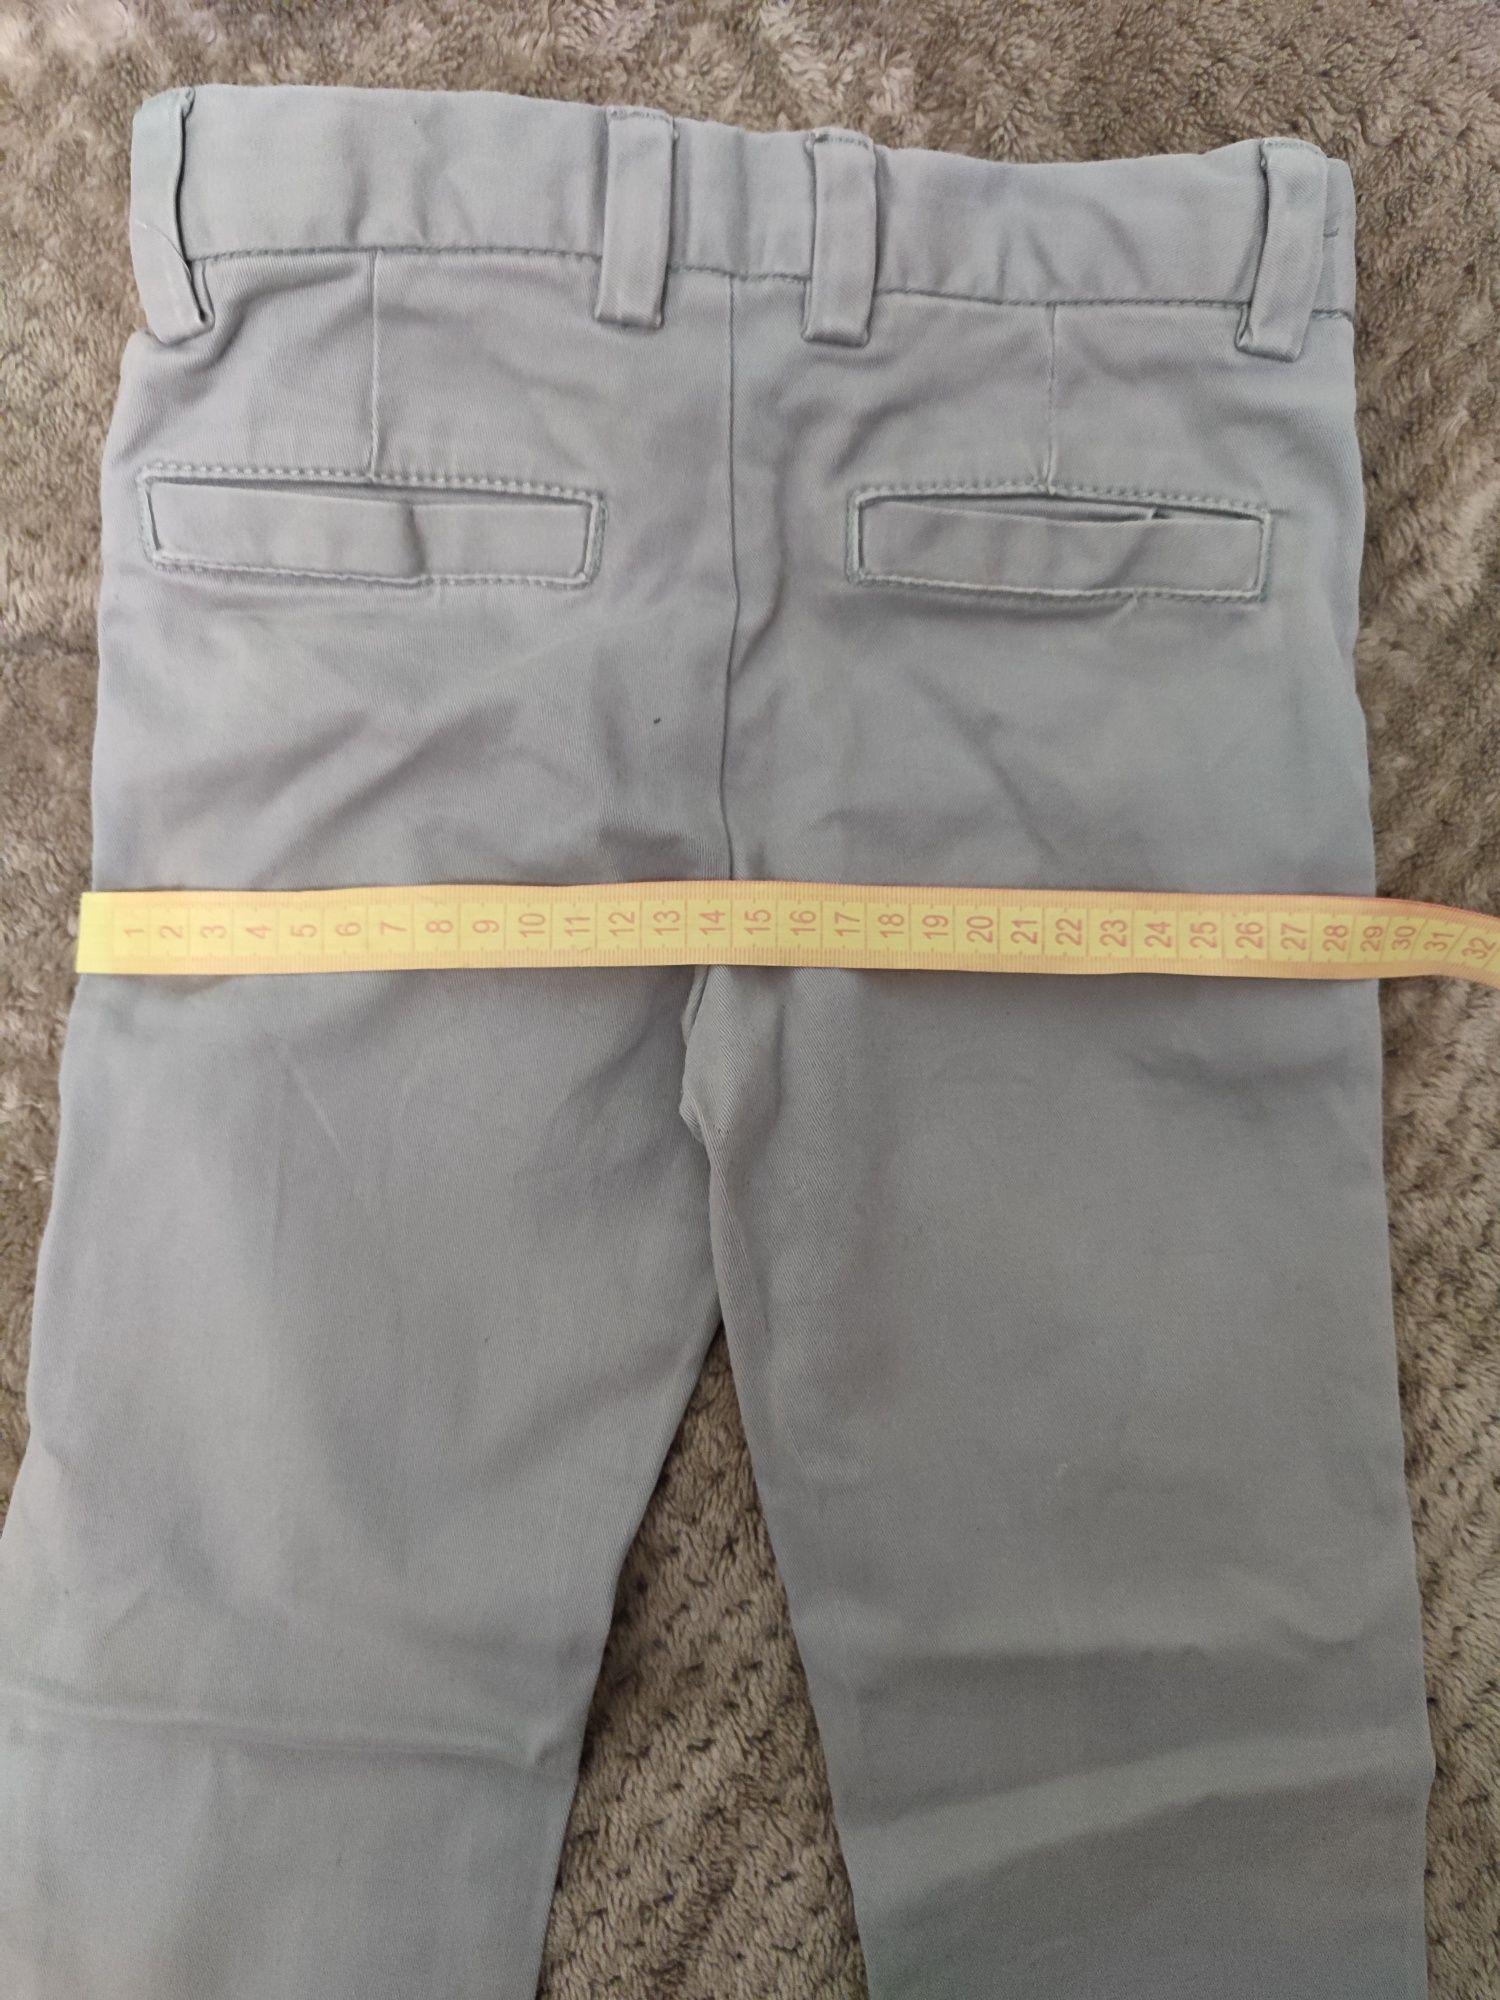 Штаны/джинсы на мальчика 5-6 лет